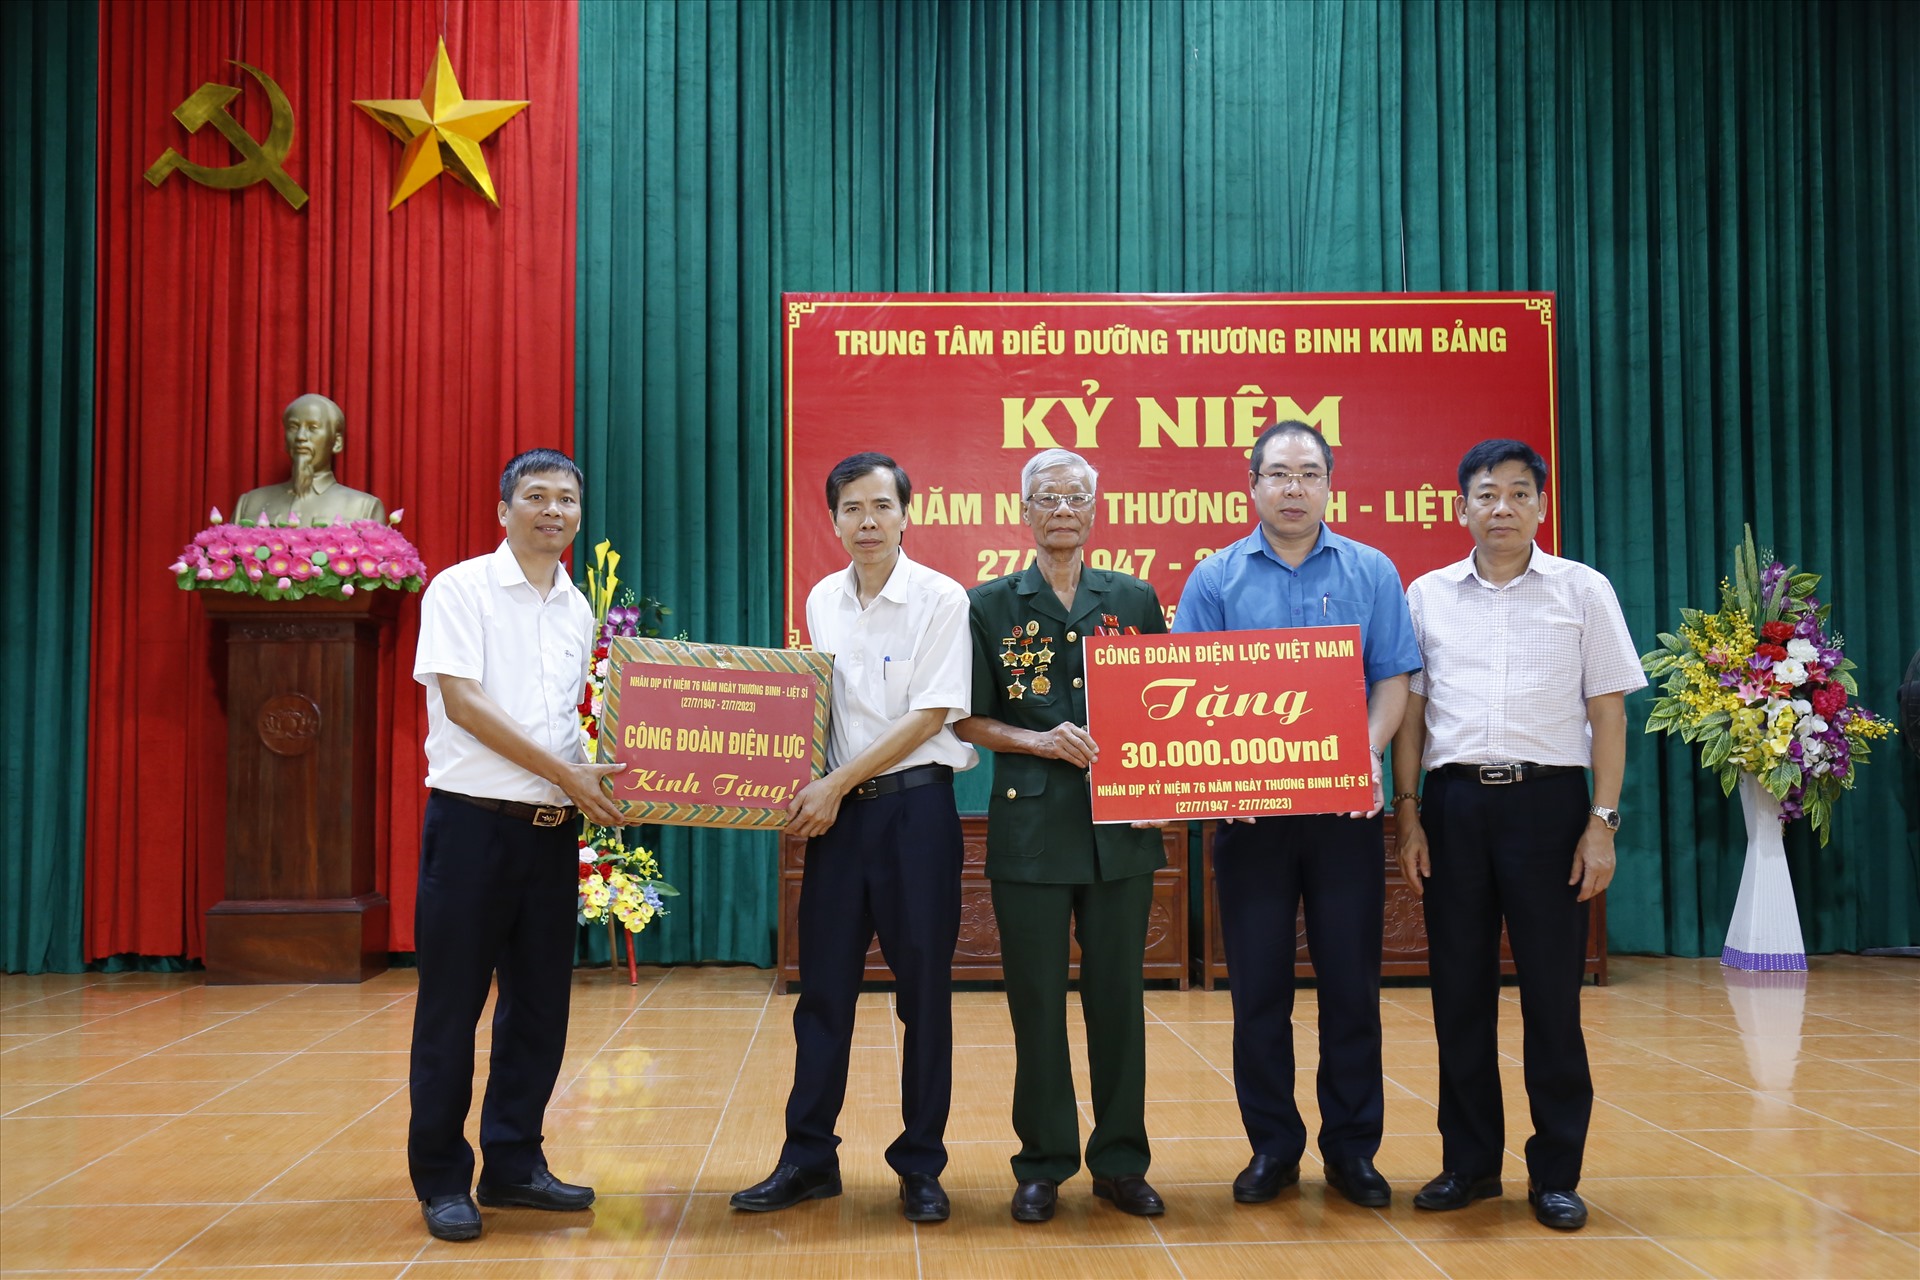 Lanh đạo Công đoàn Điện lực Việt Nam tặng quà các thương binh, bệnh binh tại Trung tâm Điều dưỡng Thương binh Kim Bảng. Ảnh: Lương Nguyễn